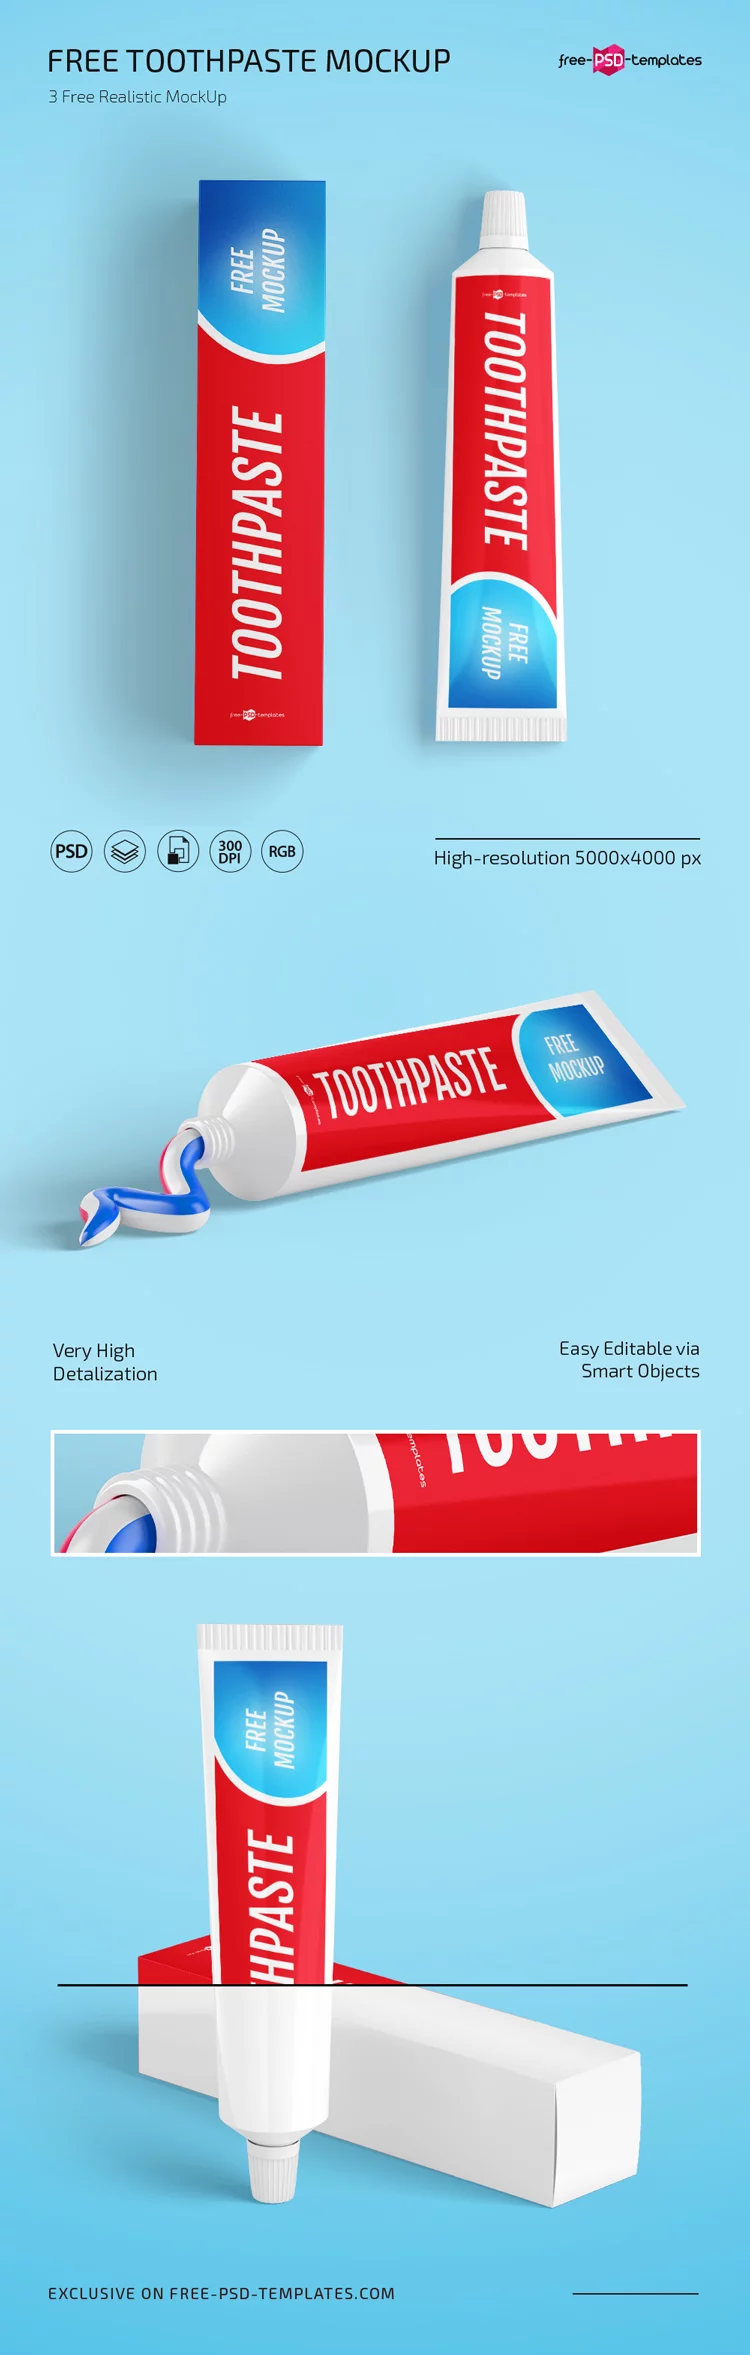 Free Toothpaste Mockup